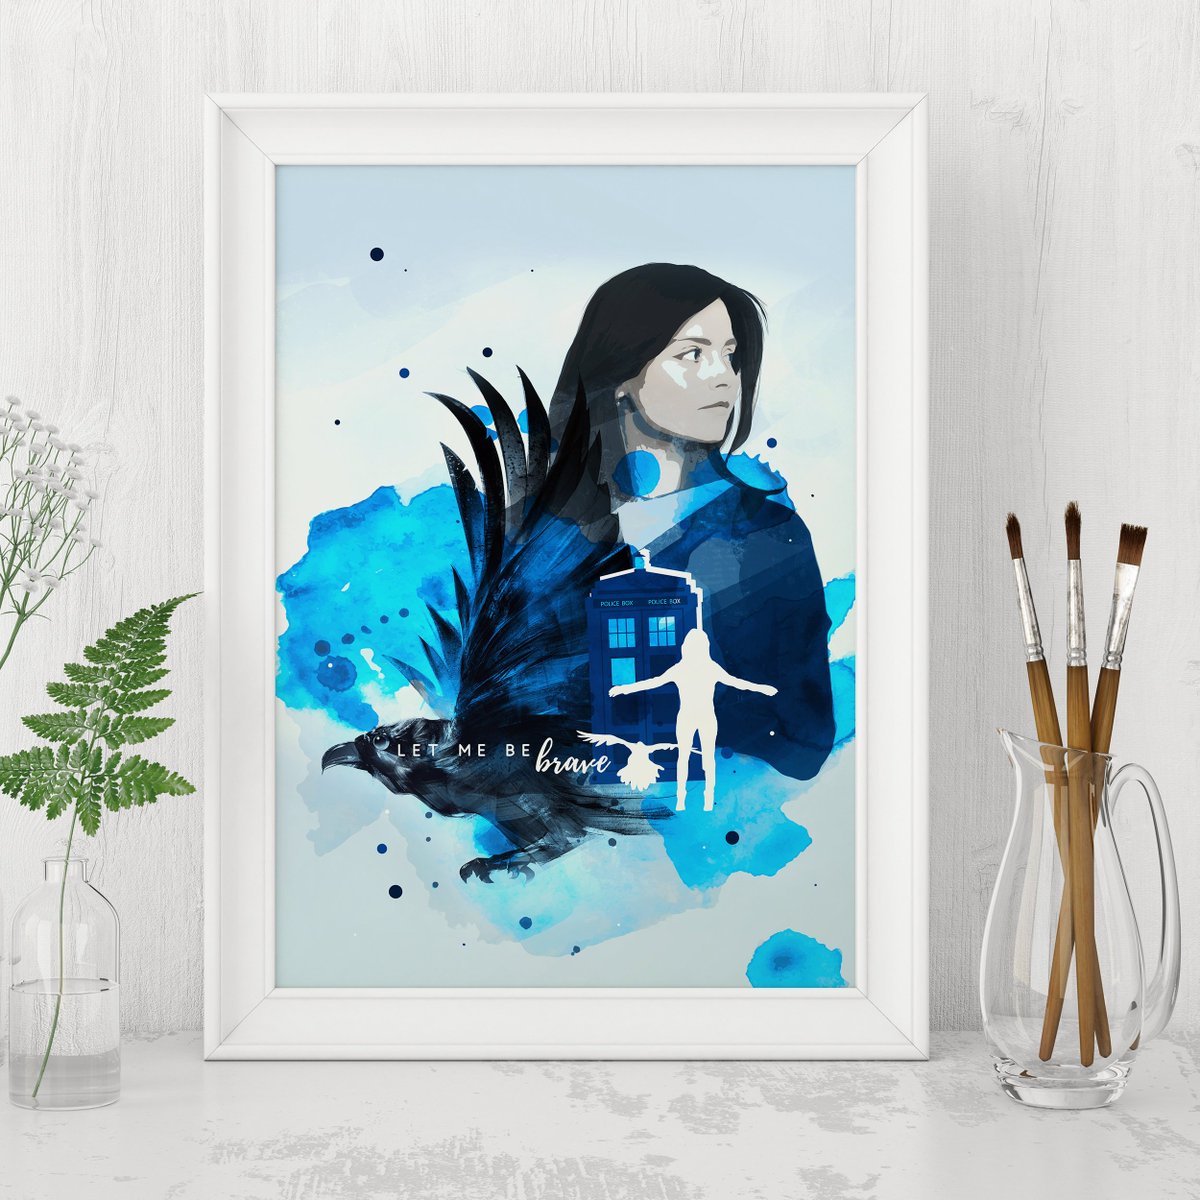 Novità sullo shop :)
Un poster dedicato a Clara Oswald nato da una richiesta personalizzata, lo trovi sul mio #etsyshop

etsy.me/2ItYWDW 

#arte #stampe #digitale #blu #bianco #minimal #claraoswald #doctorwho #fandom #stampadigitale